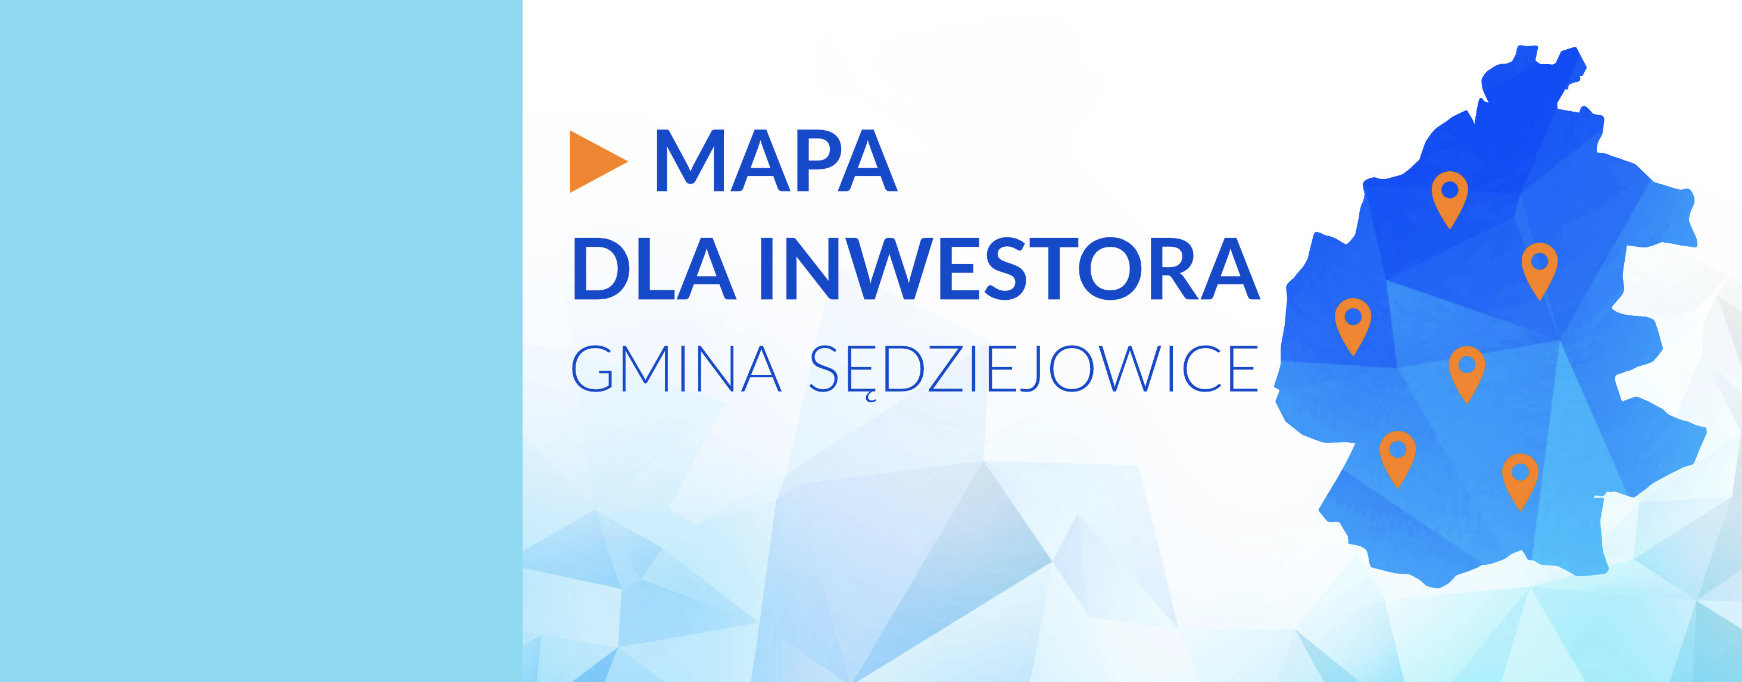 Mapa dla Inwestora - Gmina Sędziejowice